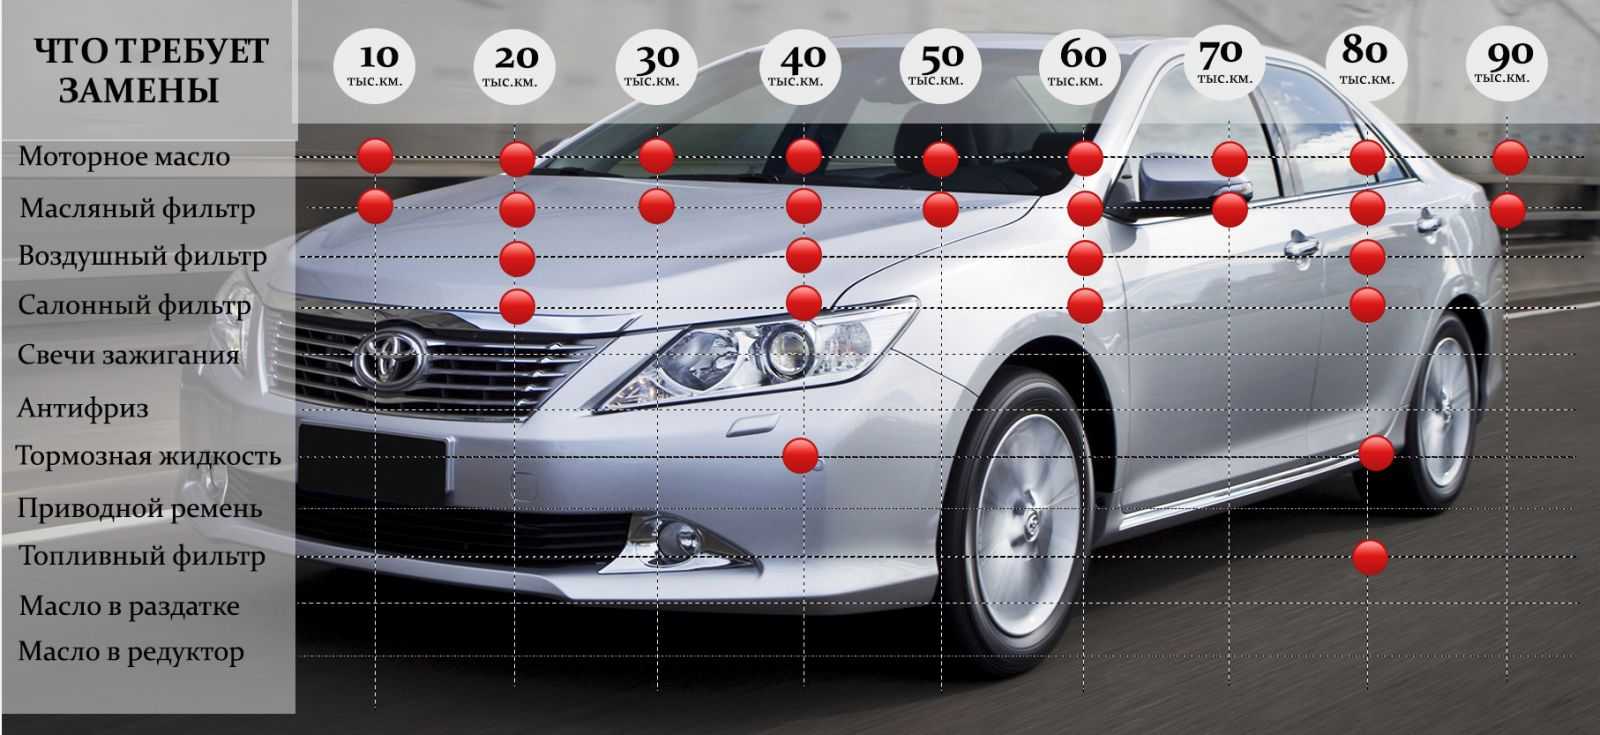 Передняя и задняя подвески в фольксваген поло седан (vw polo sedan): обзор, замена, видео